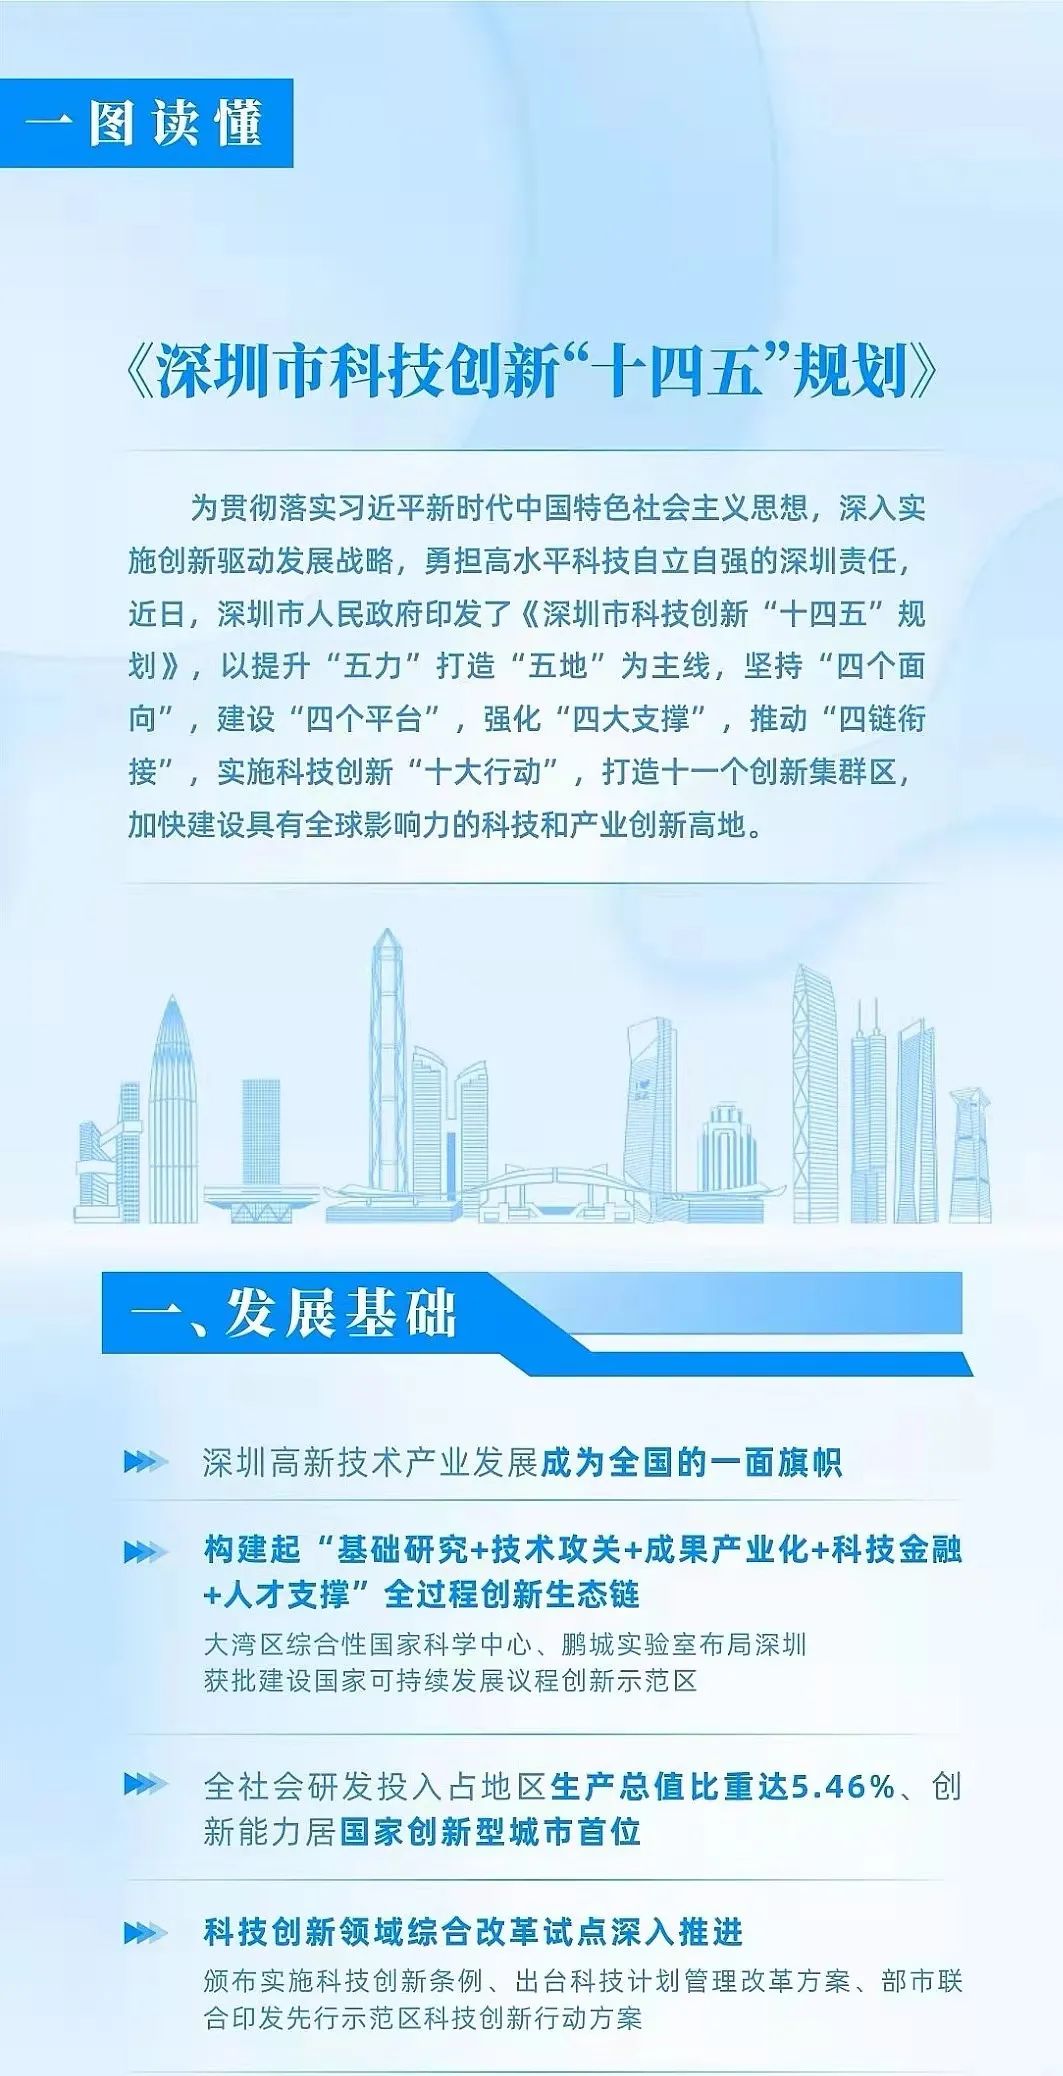 深圳公布十四五科技创新规划深汕智造城纳入11个创新集群区